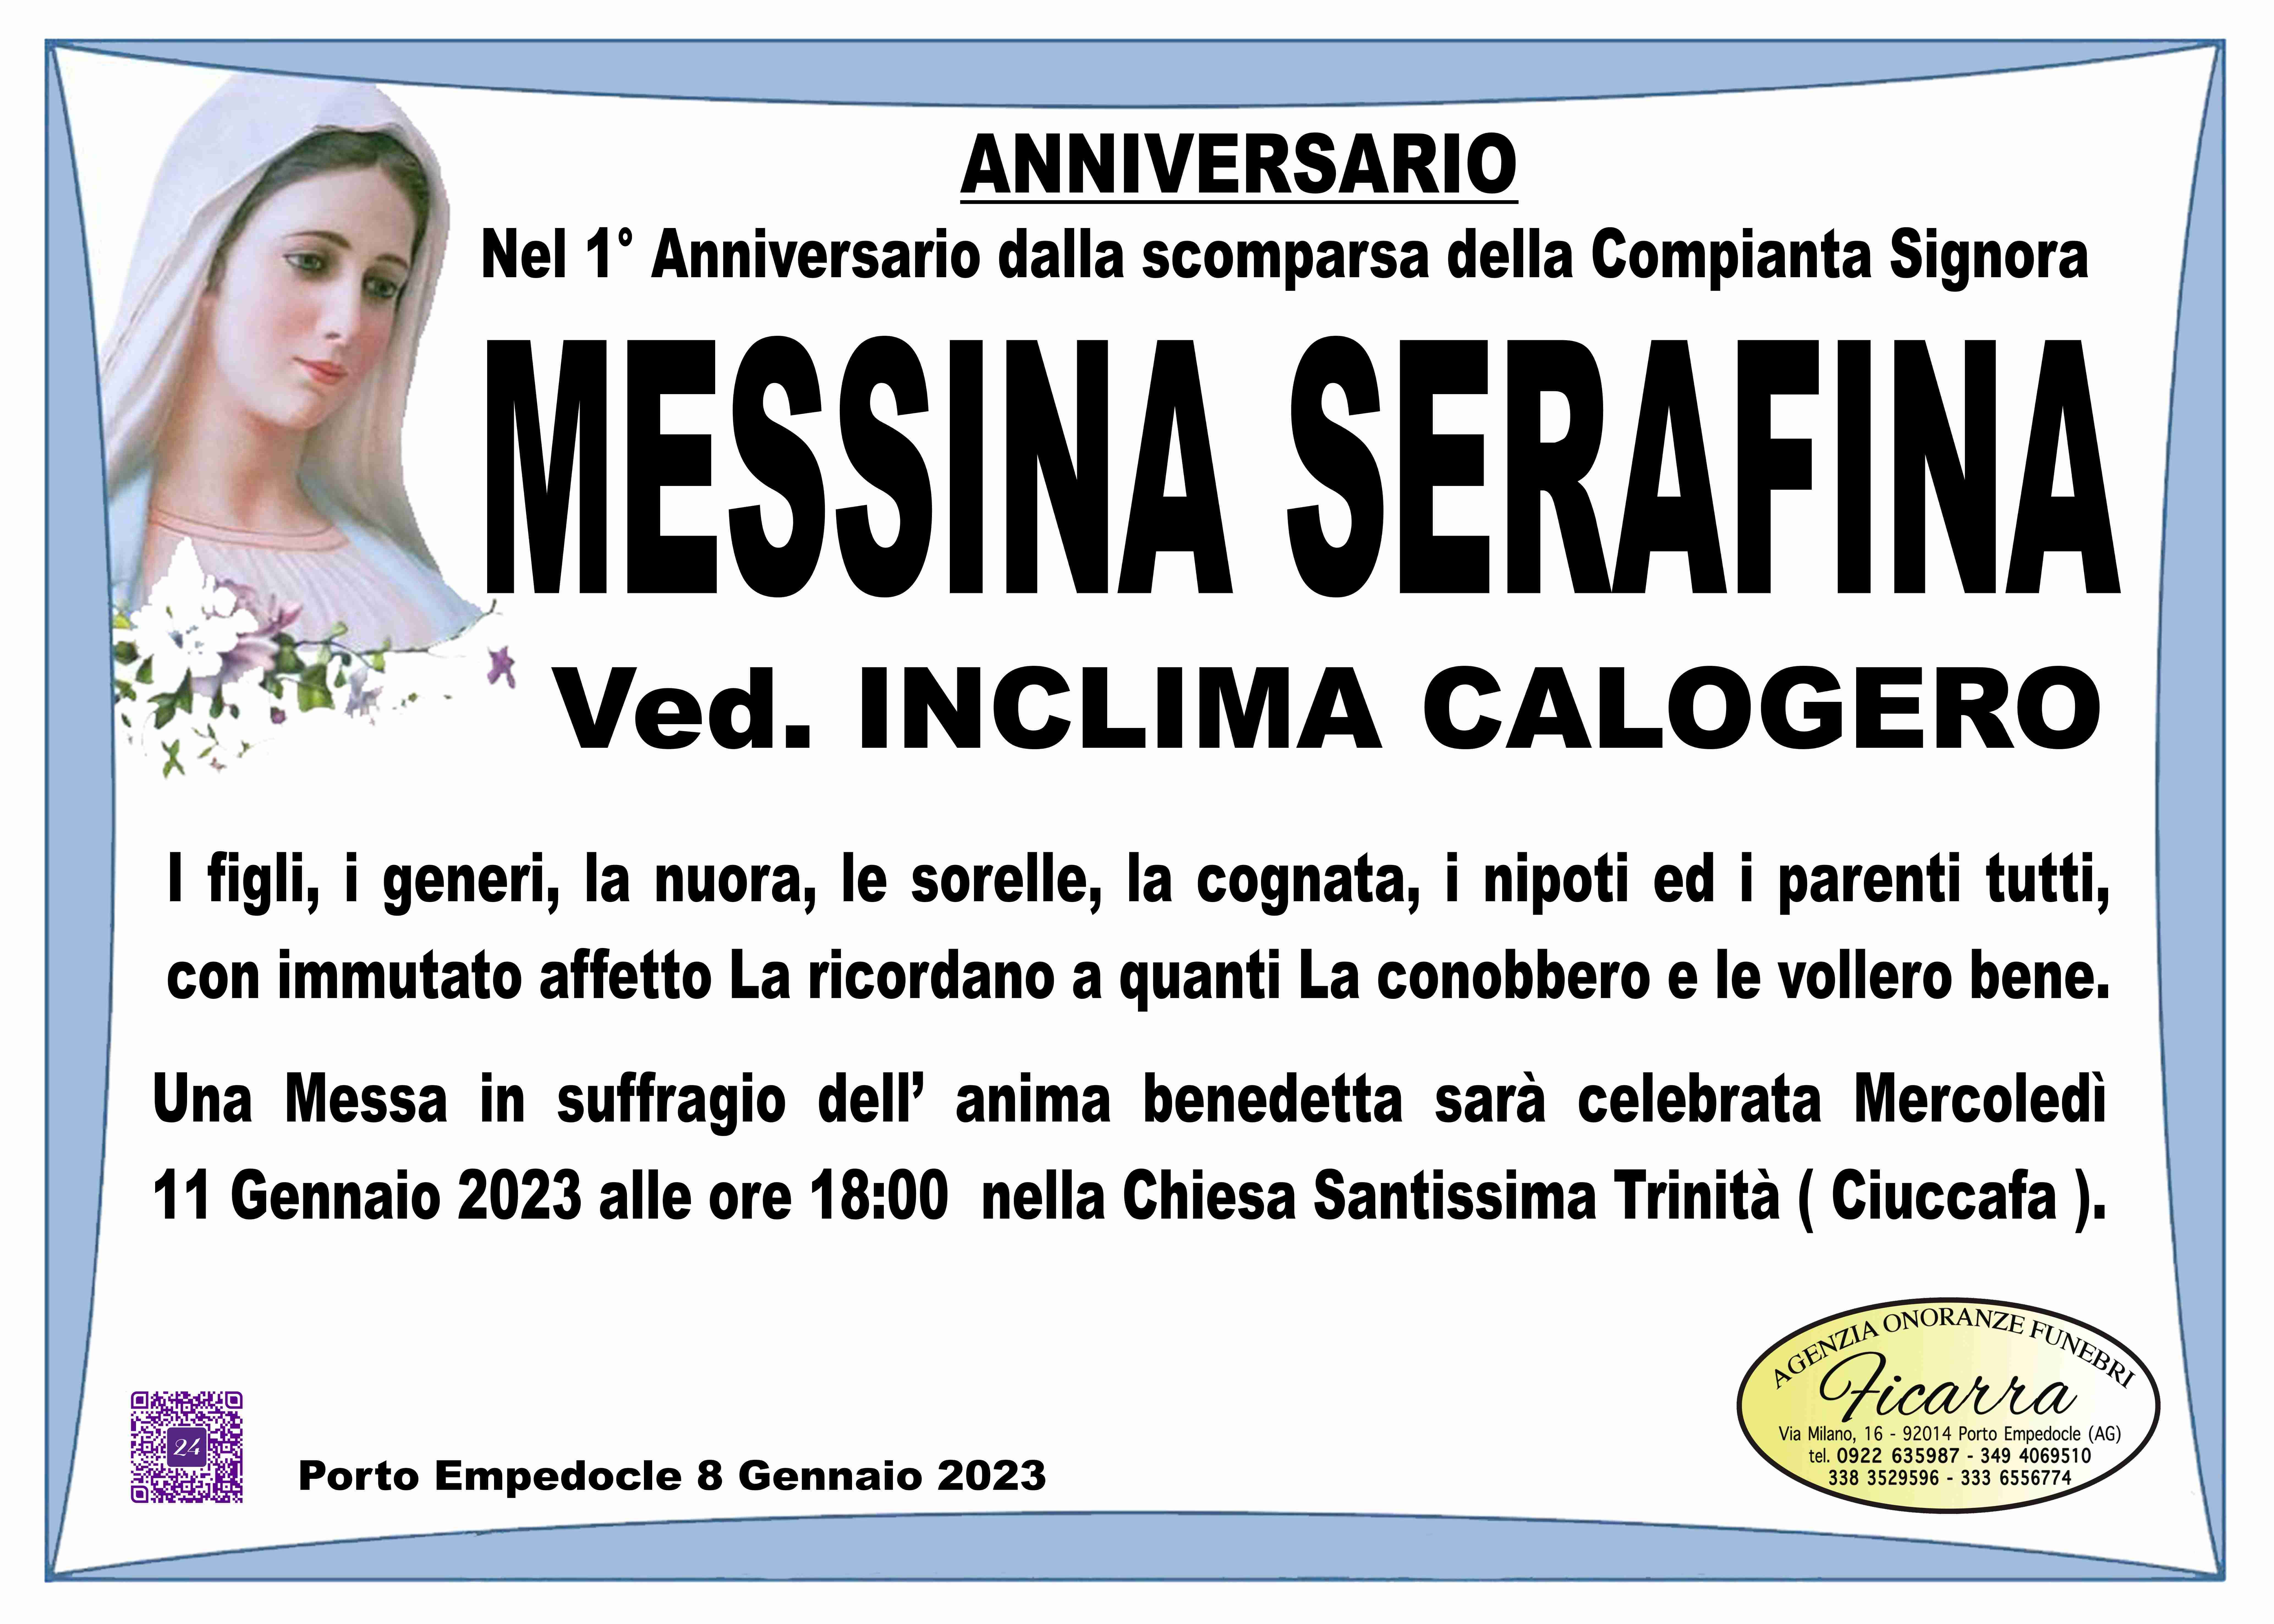 Serafina Messina